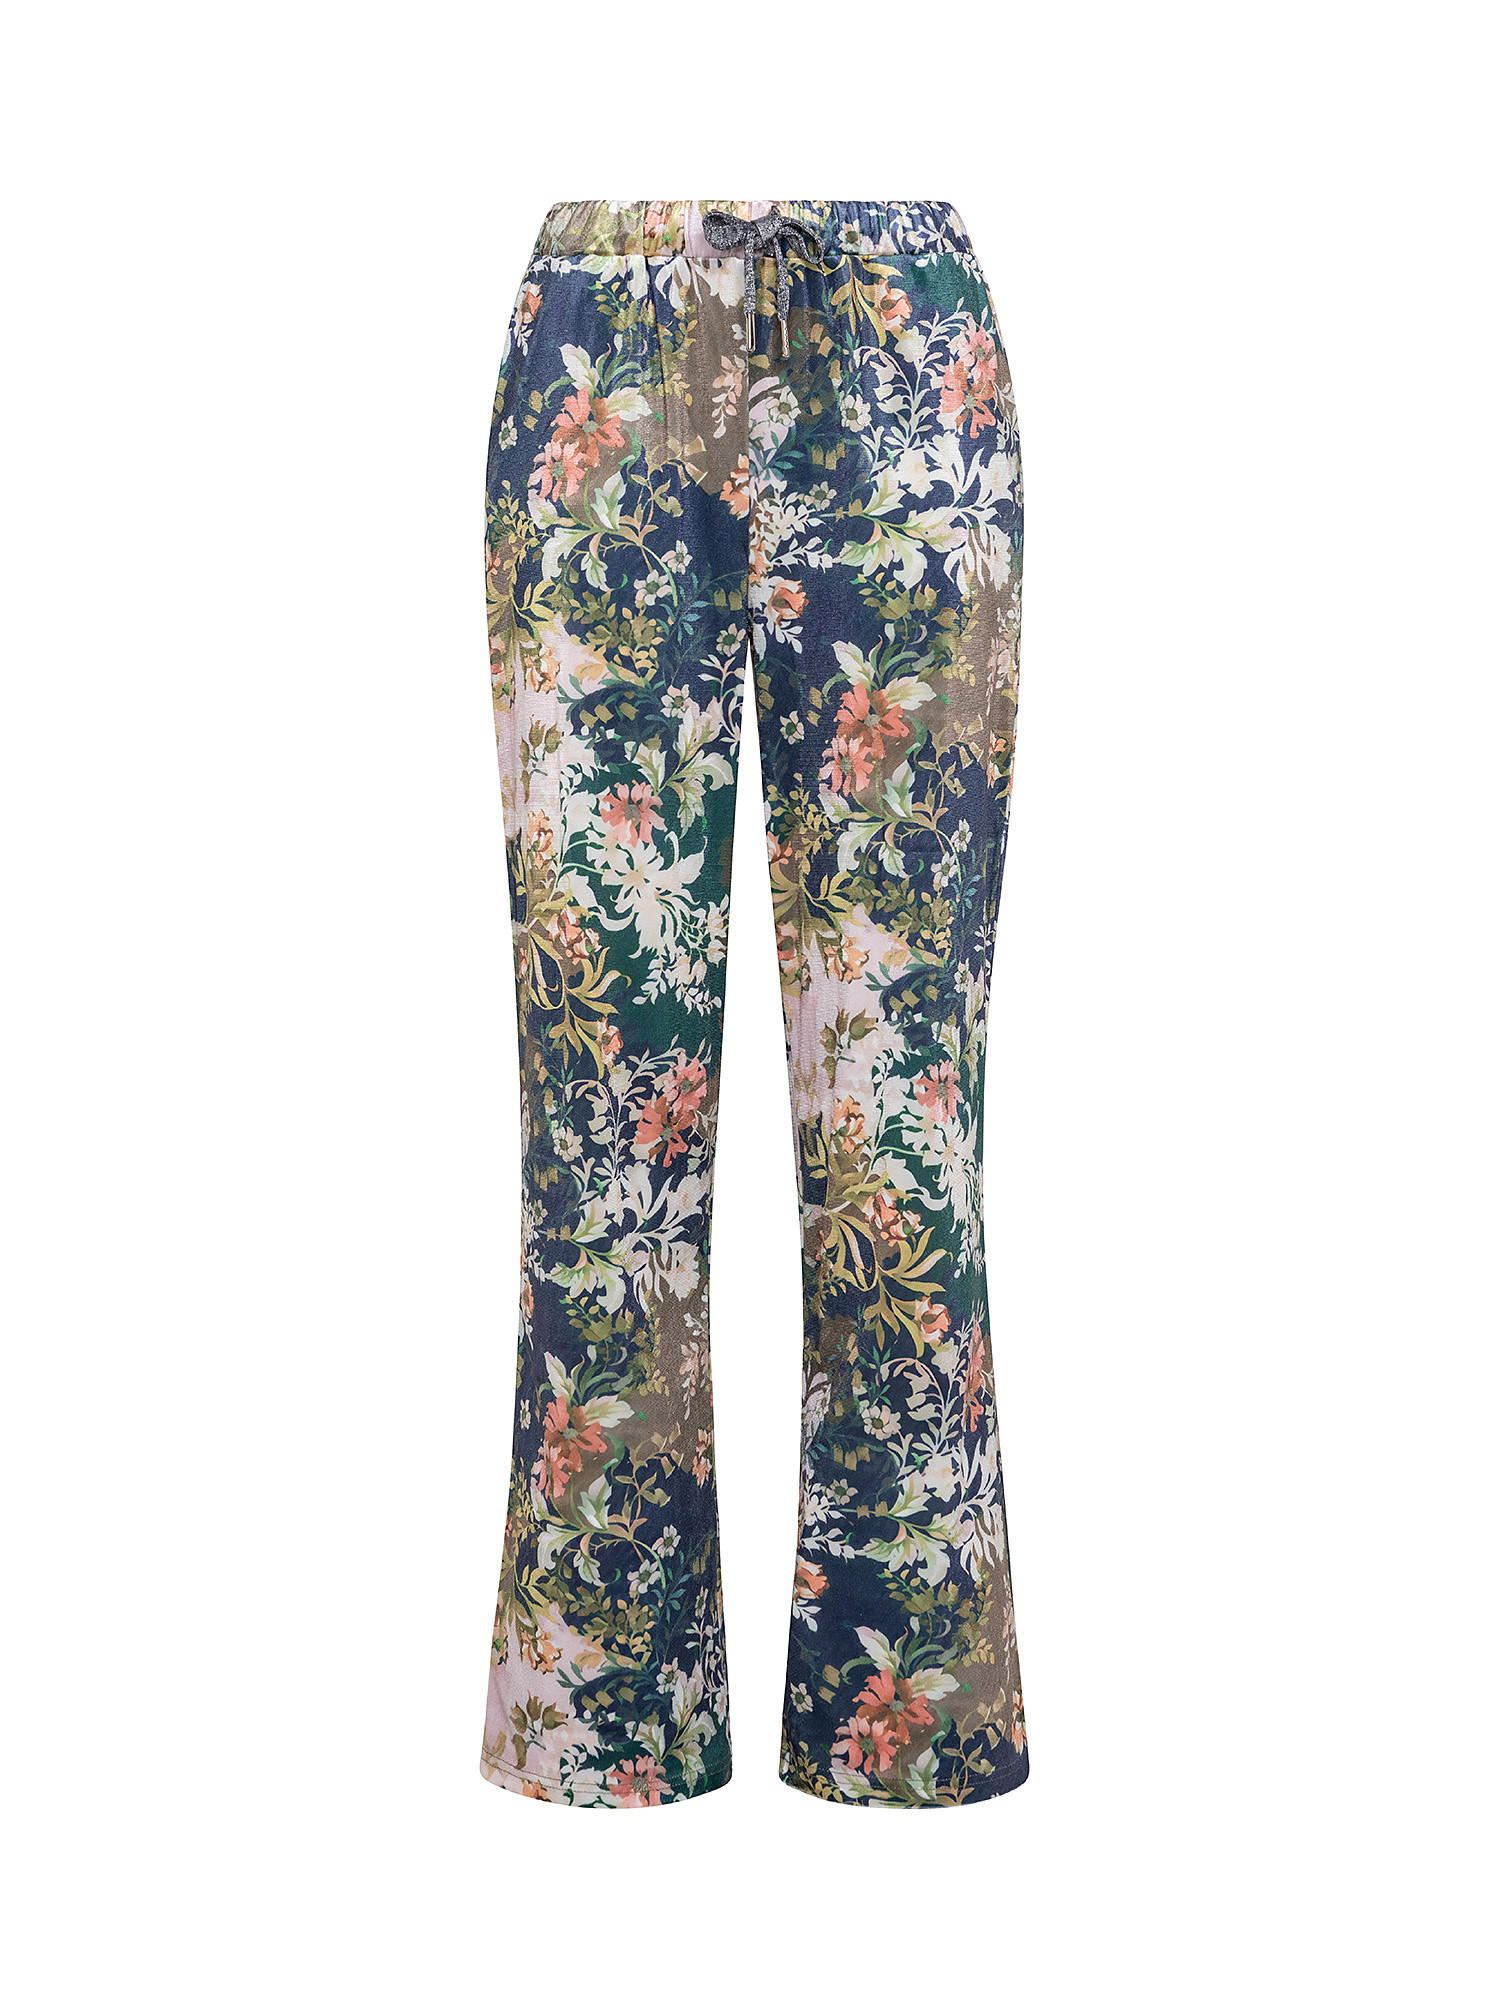 Велюровые брюки с цветочным принтом Koan Knitwear, мультиколор брюки велюровые на меху клариса